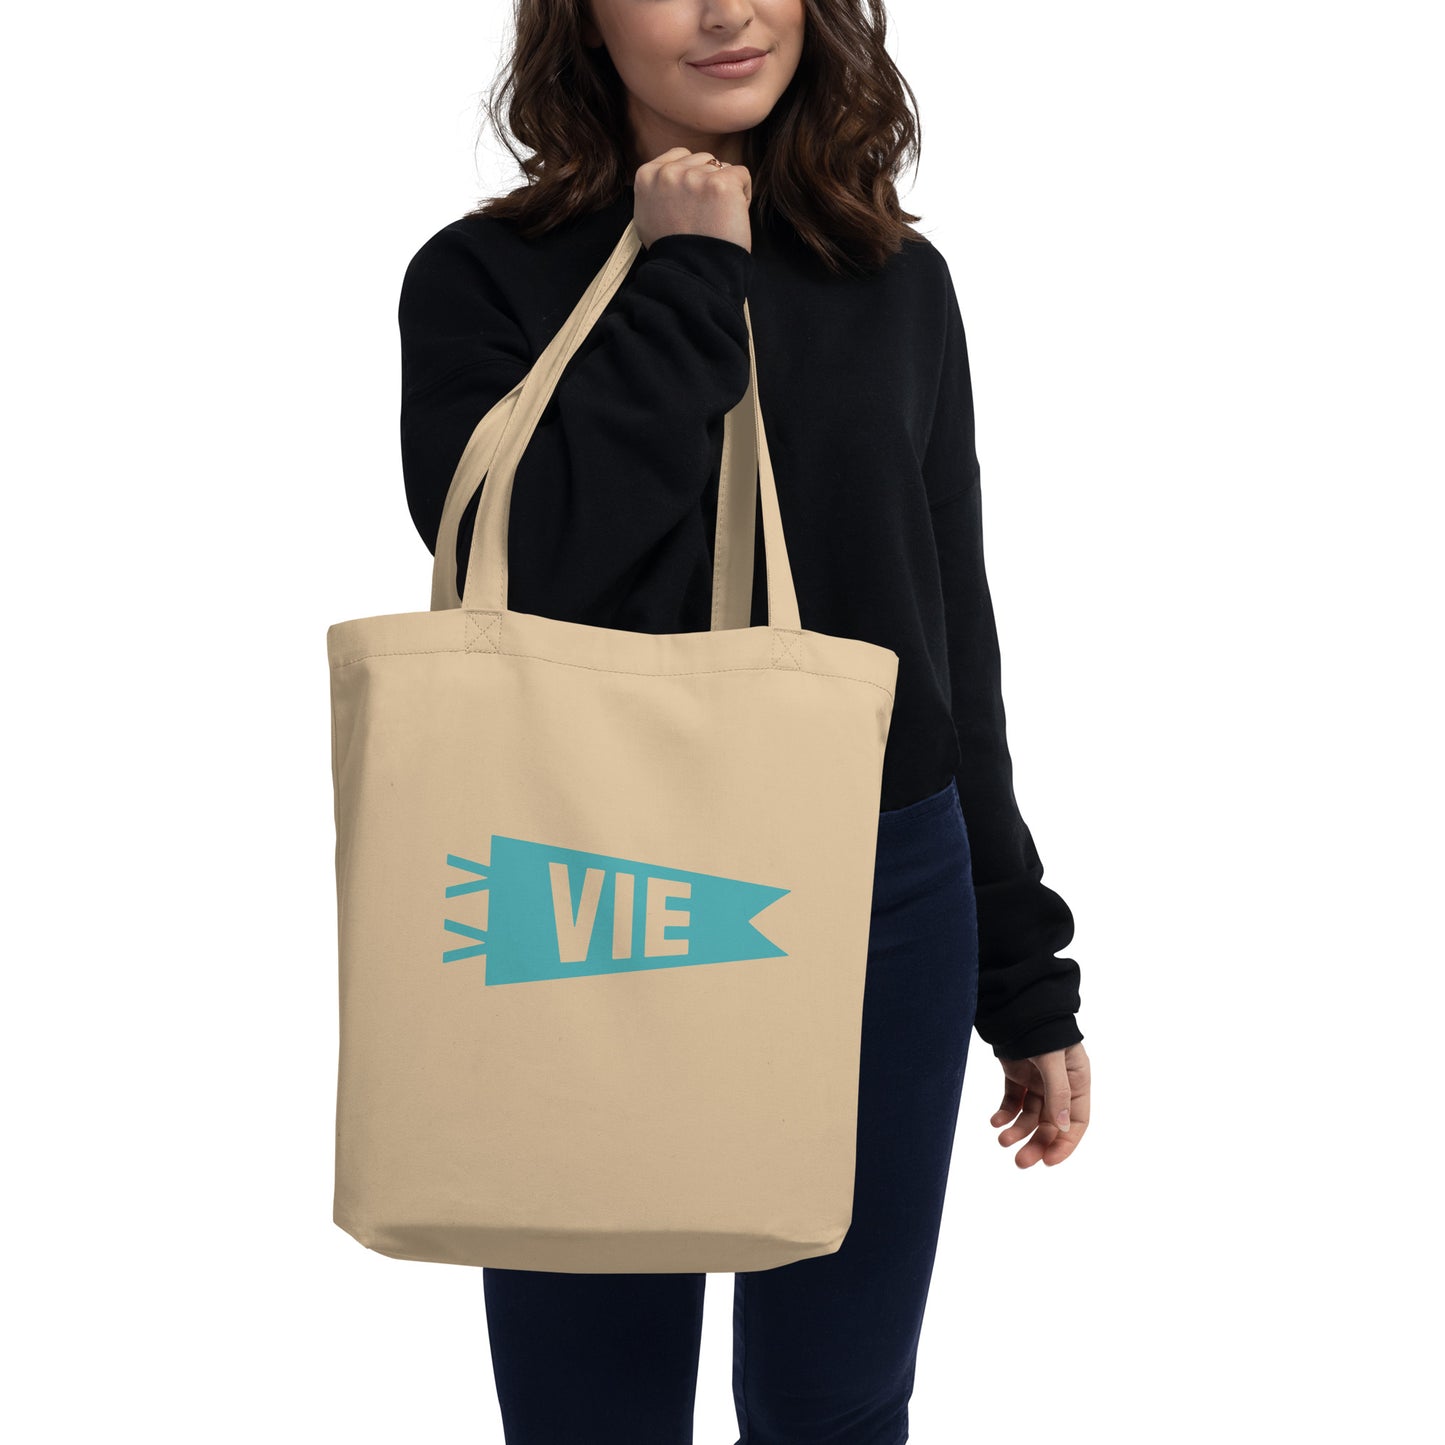 Cool Travel Gift Organic Tote Bag - Viking Blue • VIE Vienna • YHM Designs - Image 03